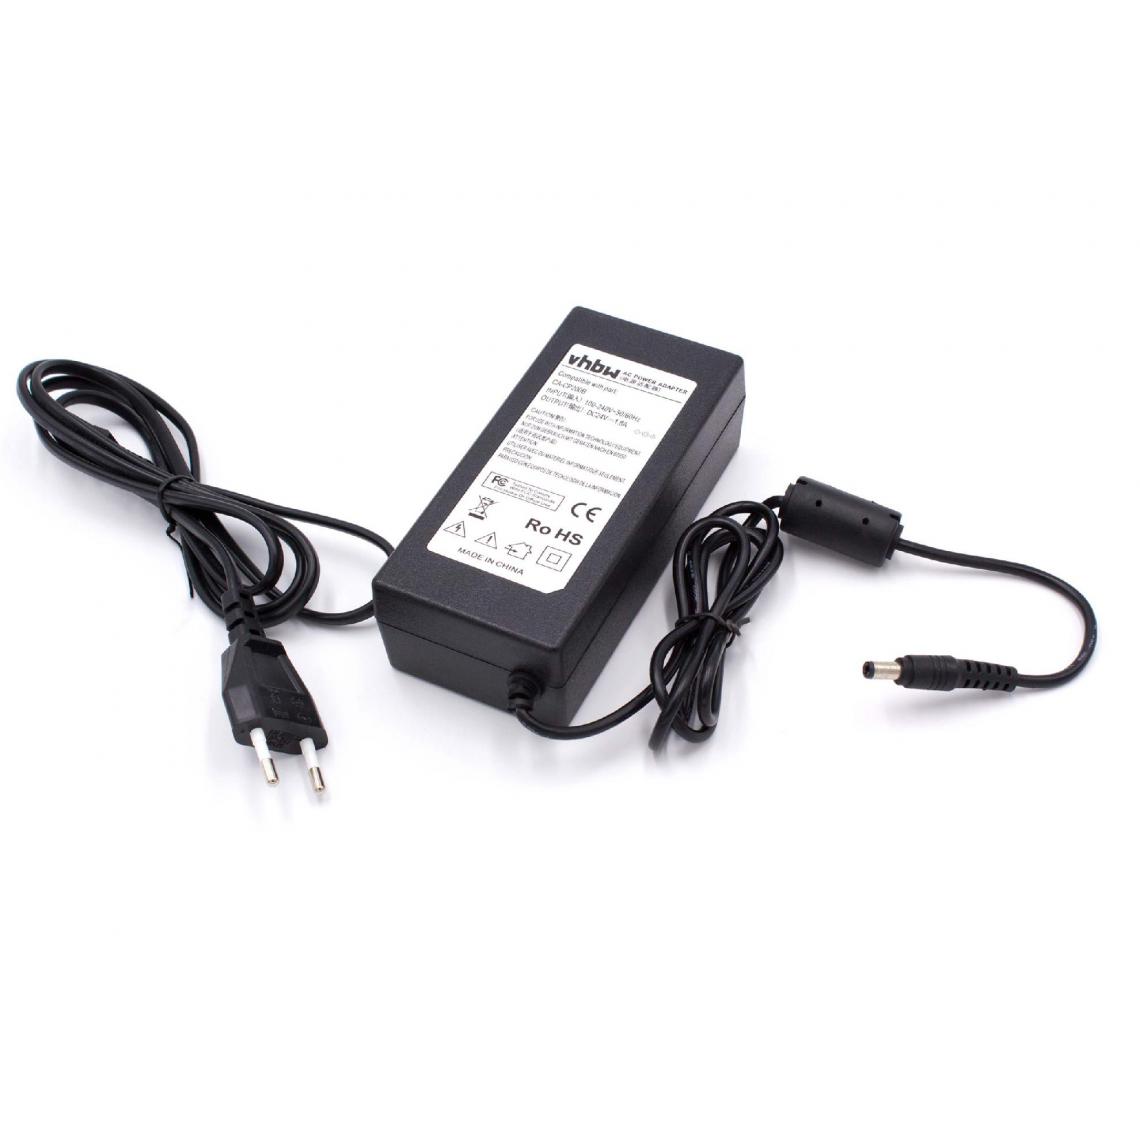 Vhbw - vhbw Imprimante Adaptateur bloc d'alimentation Câble d'alimentation Chargeur compatible avec Canon Selphy CP710, CP720, CP730 imprimante; 115cm, 1.8A - Accessoires alimentation